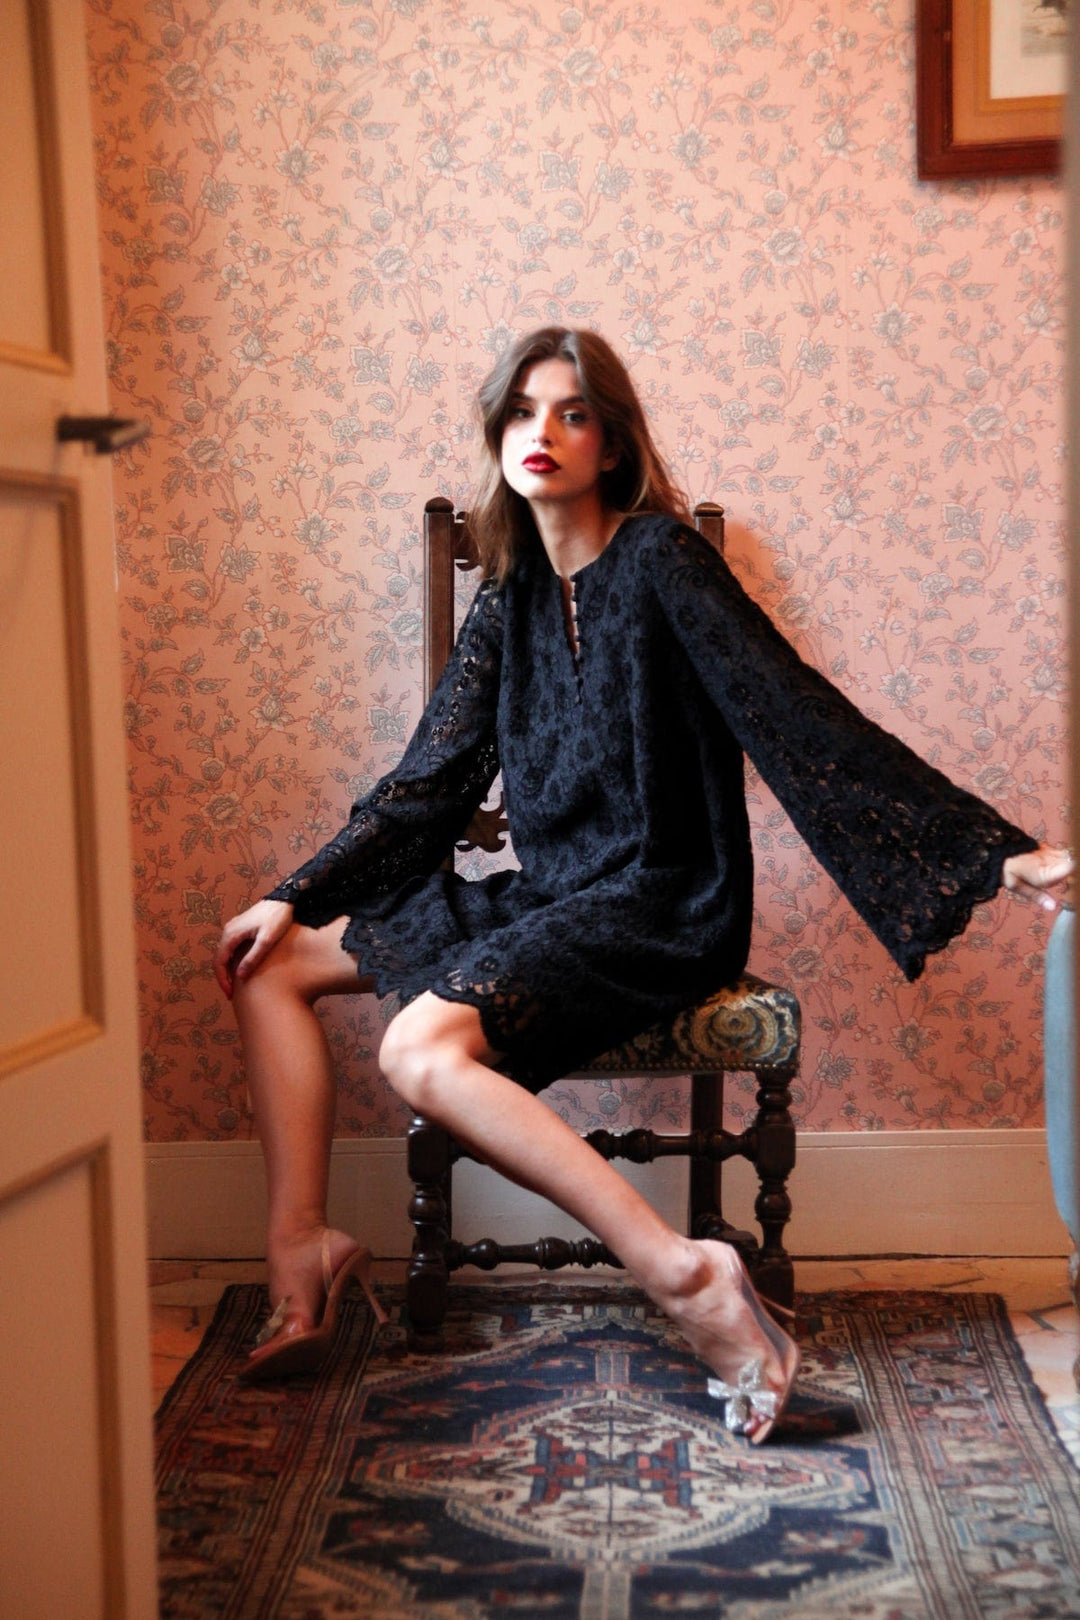 Aria Dress Black Lace | Kjoler | Smuk - Dameklær på nett